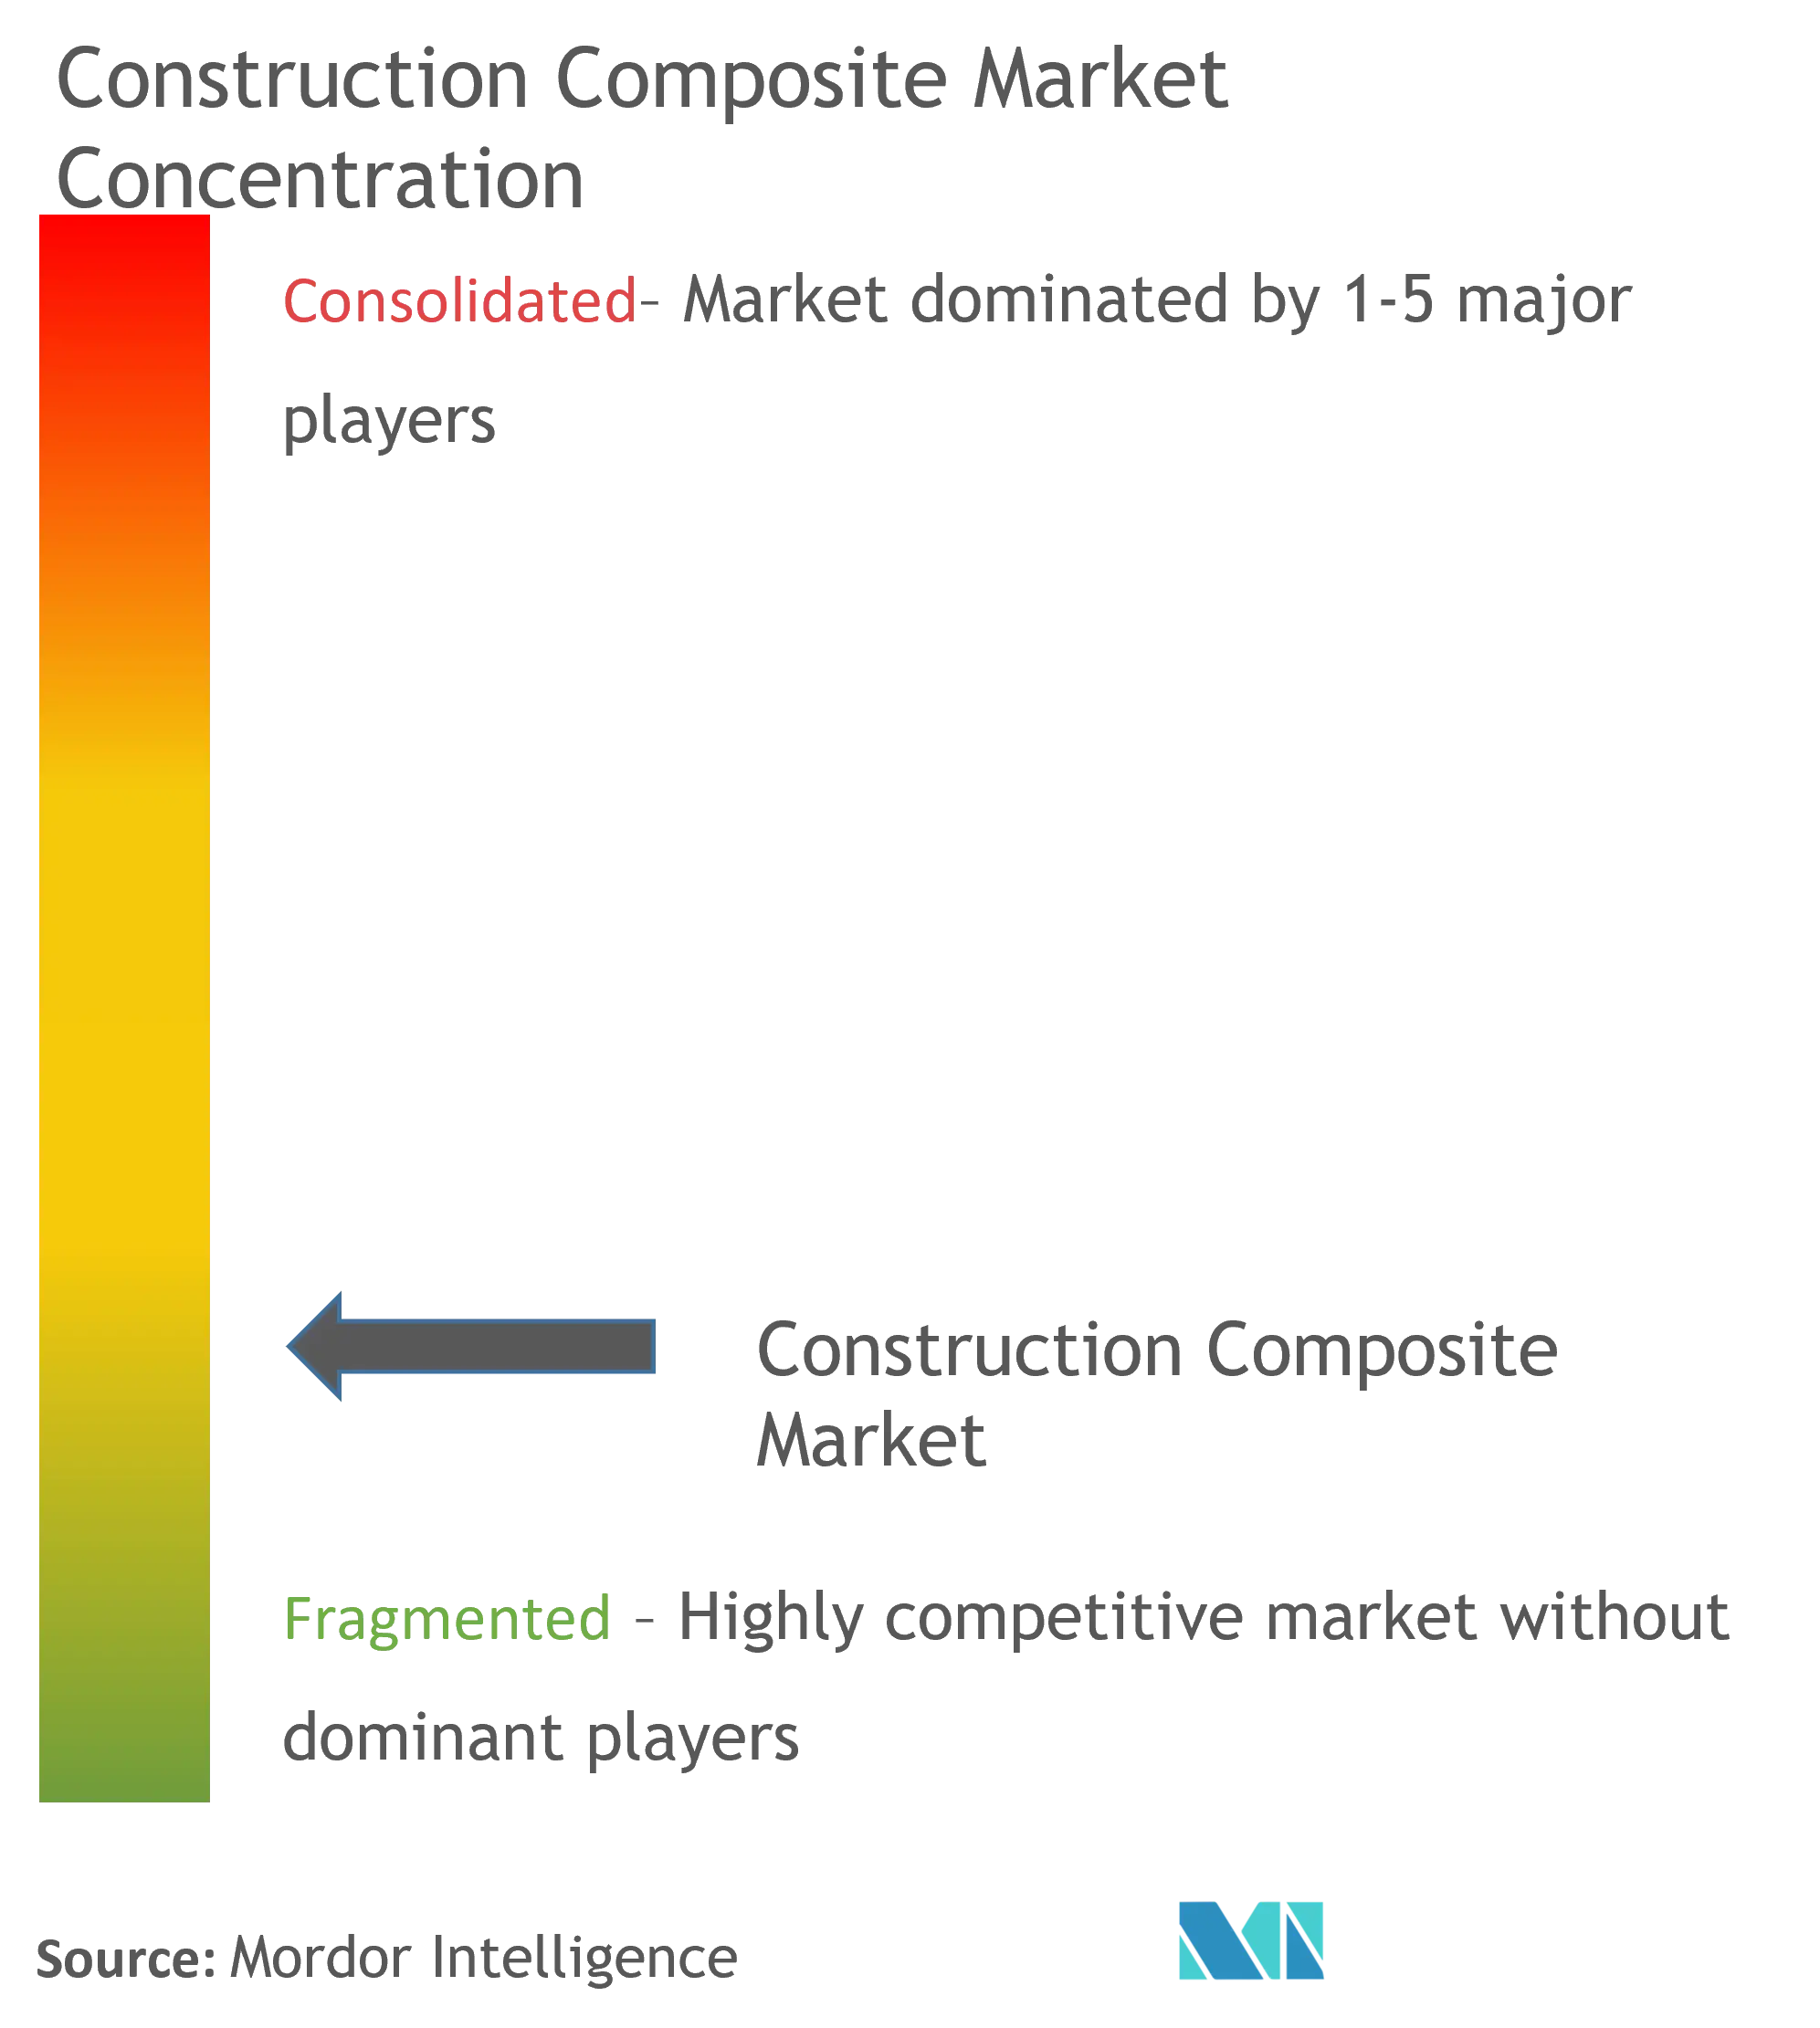 Market Concentration - Construction Composite Market.png